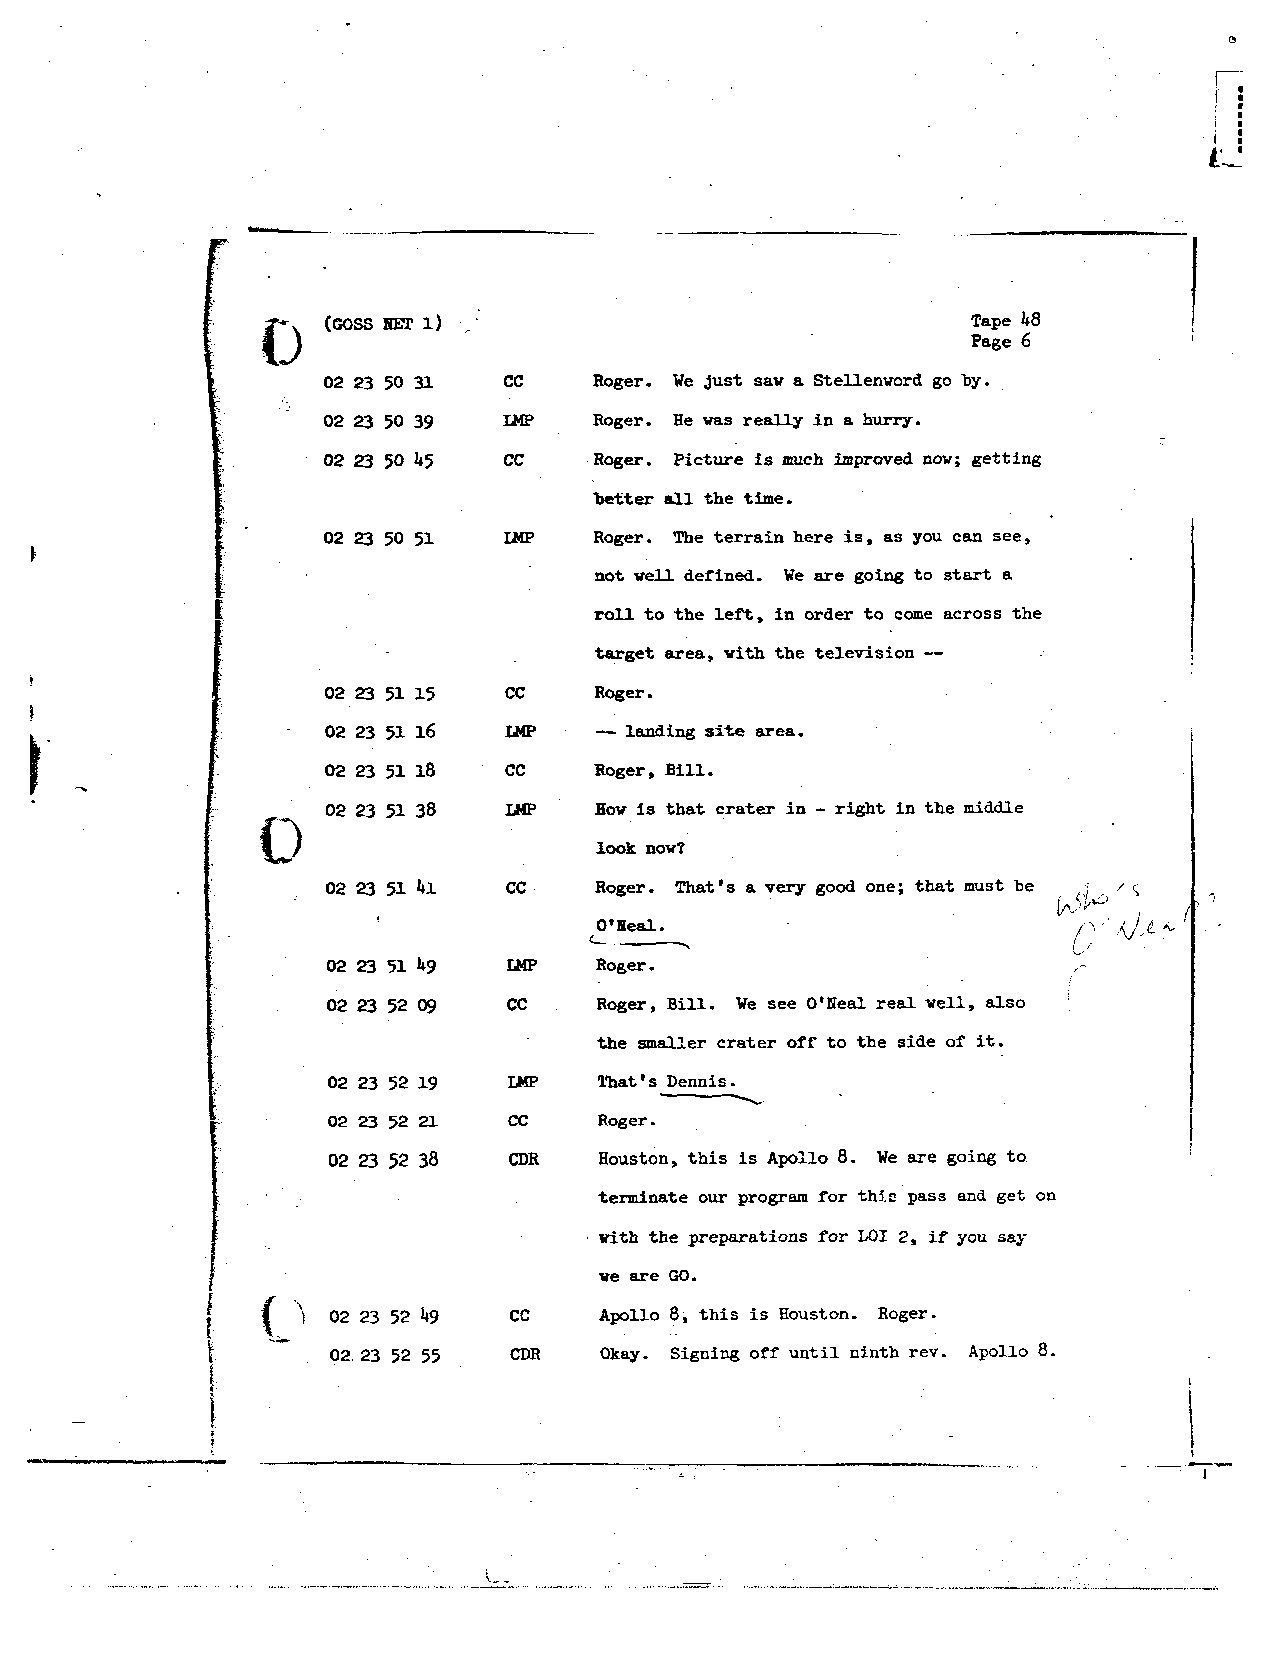 Page 378 of Apollo 8’s original transcript